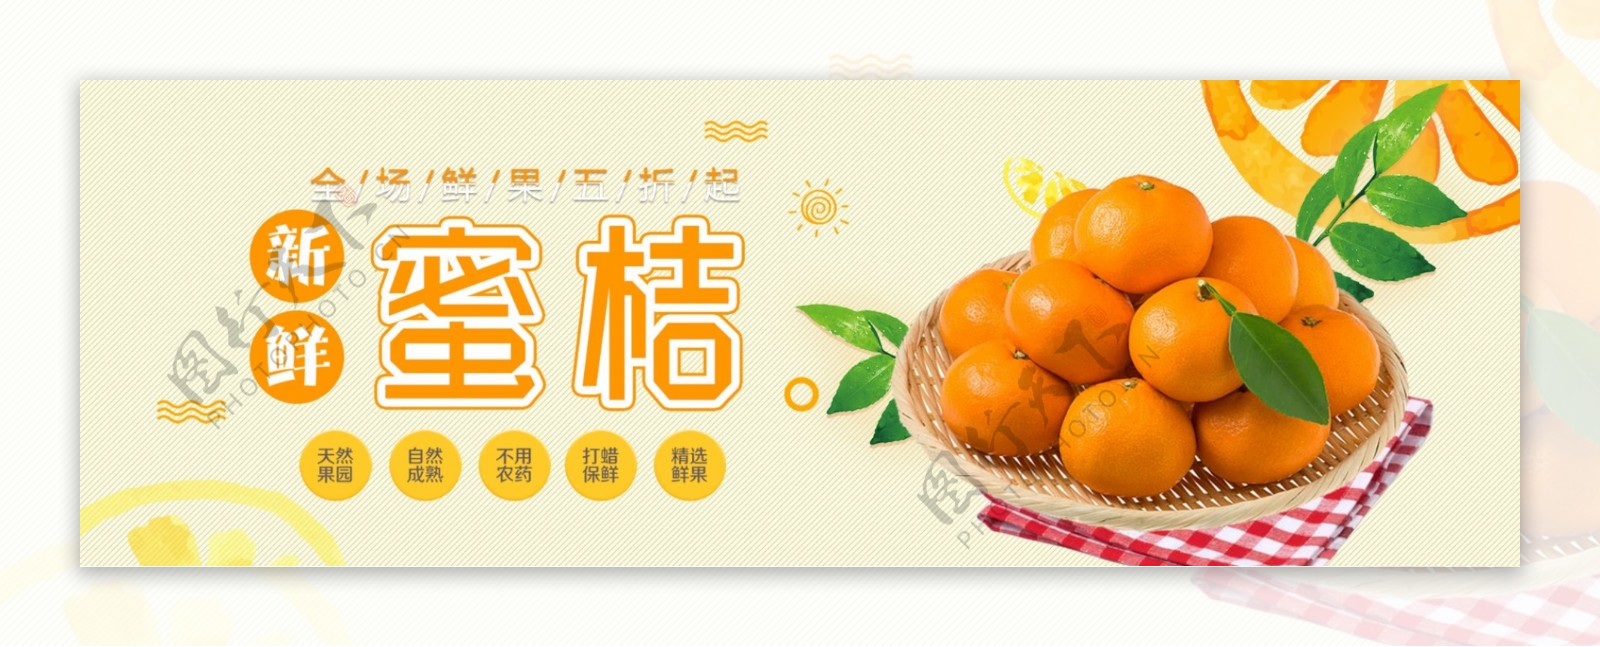 橙色清新水果橘子蜜桔食品电商banner